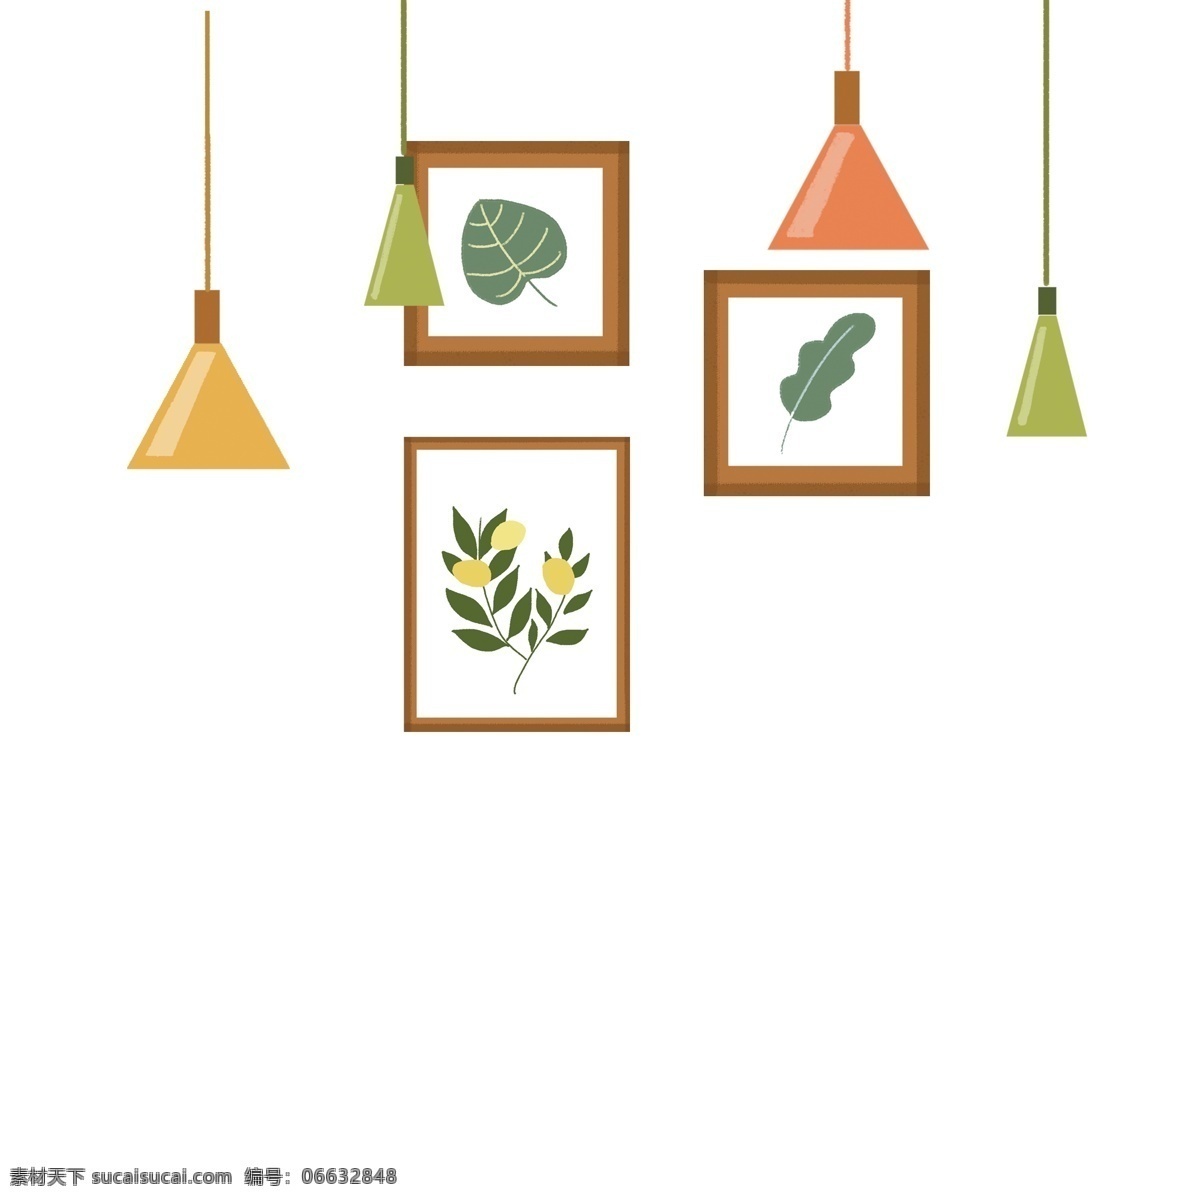 夏季 主题 树叶 壁画 吊灯 元素 绿叶 设计元素 元素设计 创意元素 手绘元素 免抠元素